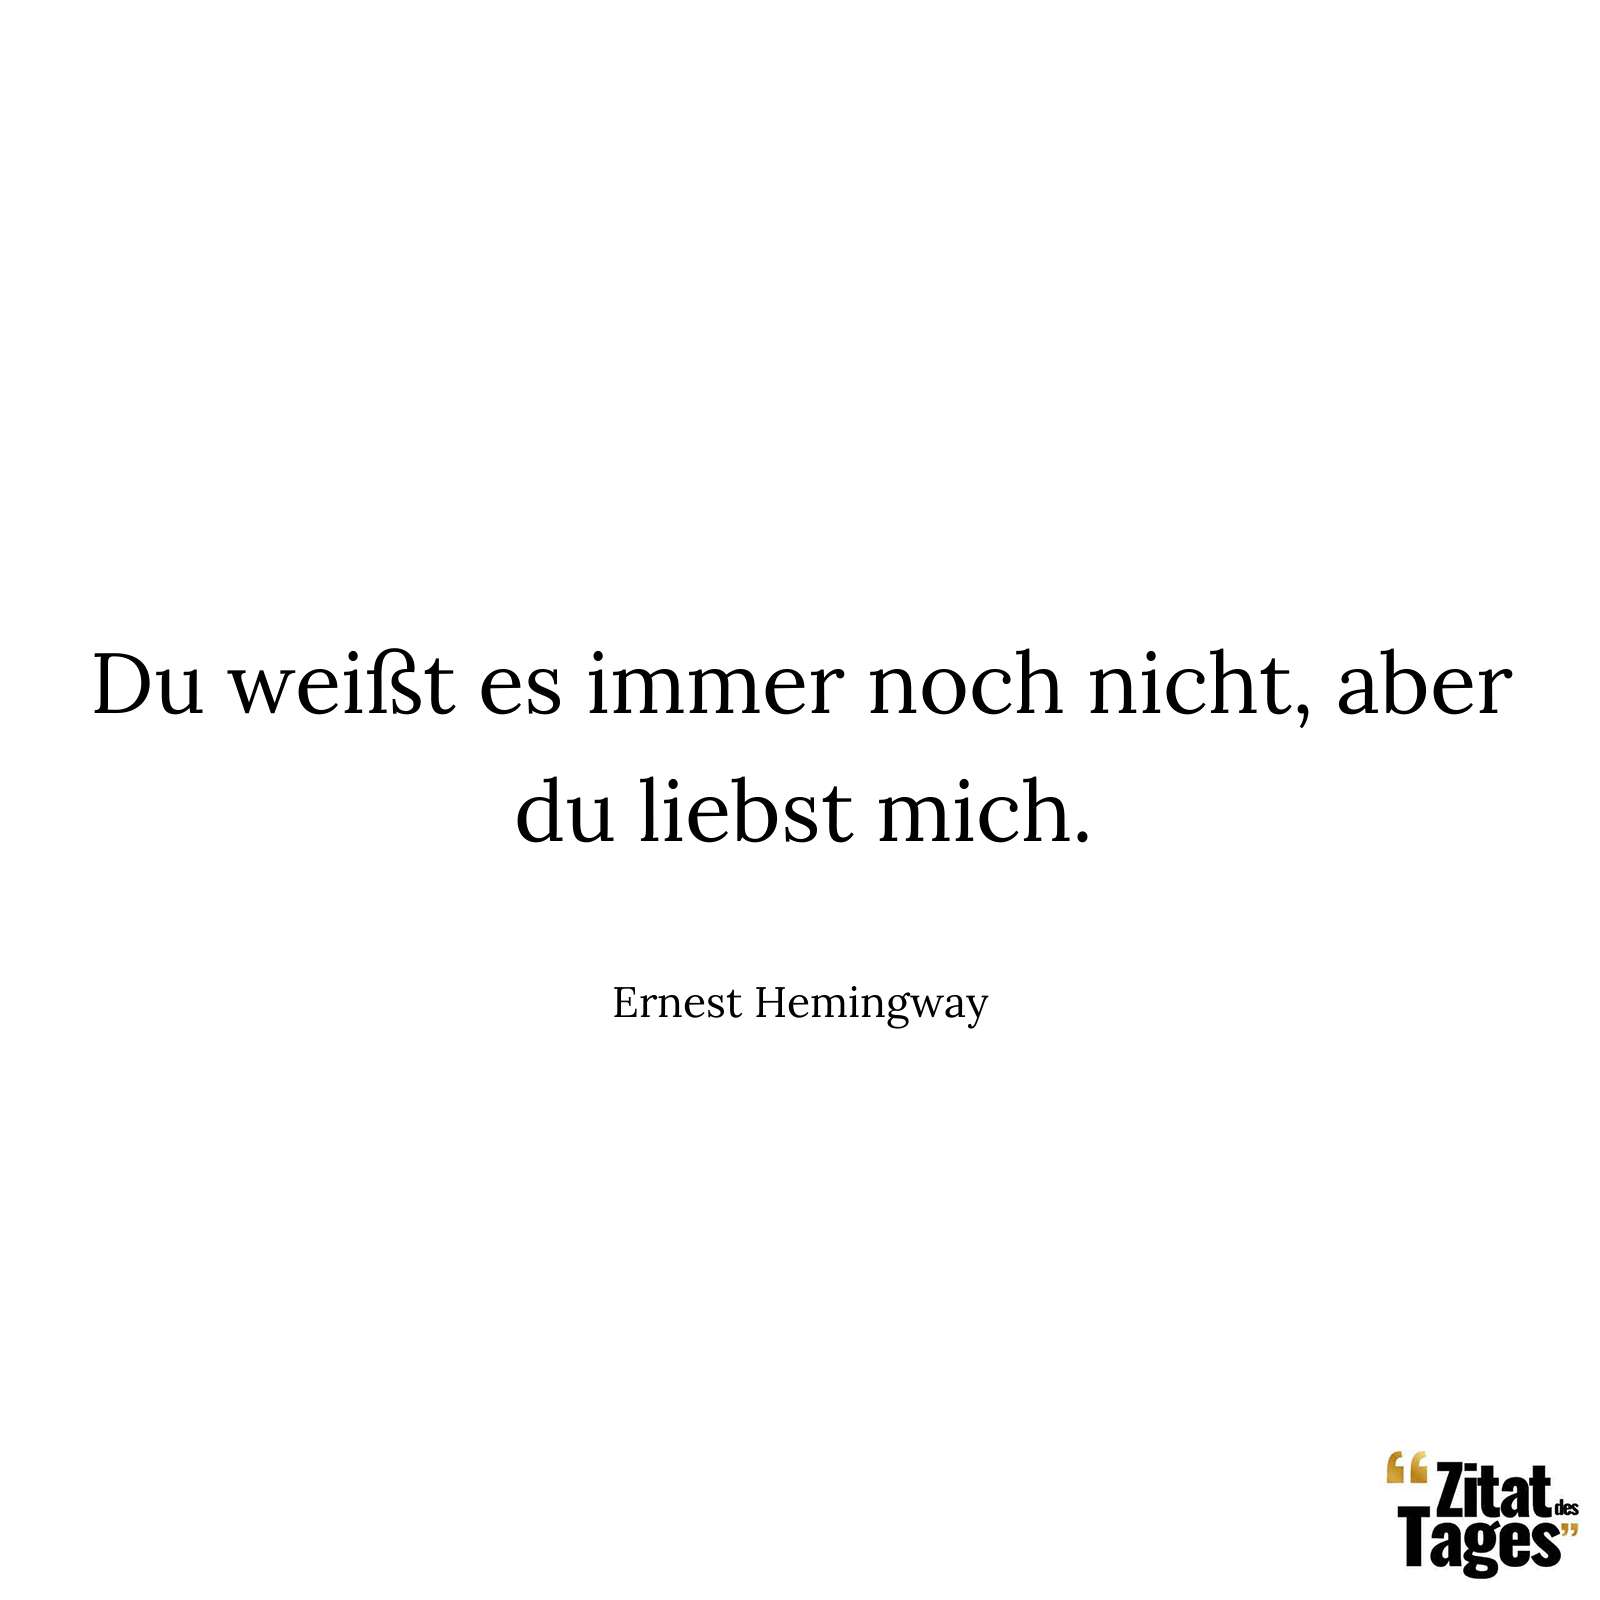 Du weißt es immer noch nicht, aber du liebst mich. - Ernest Hemingway